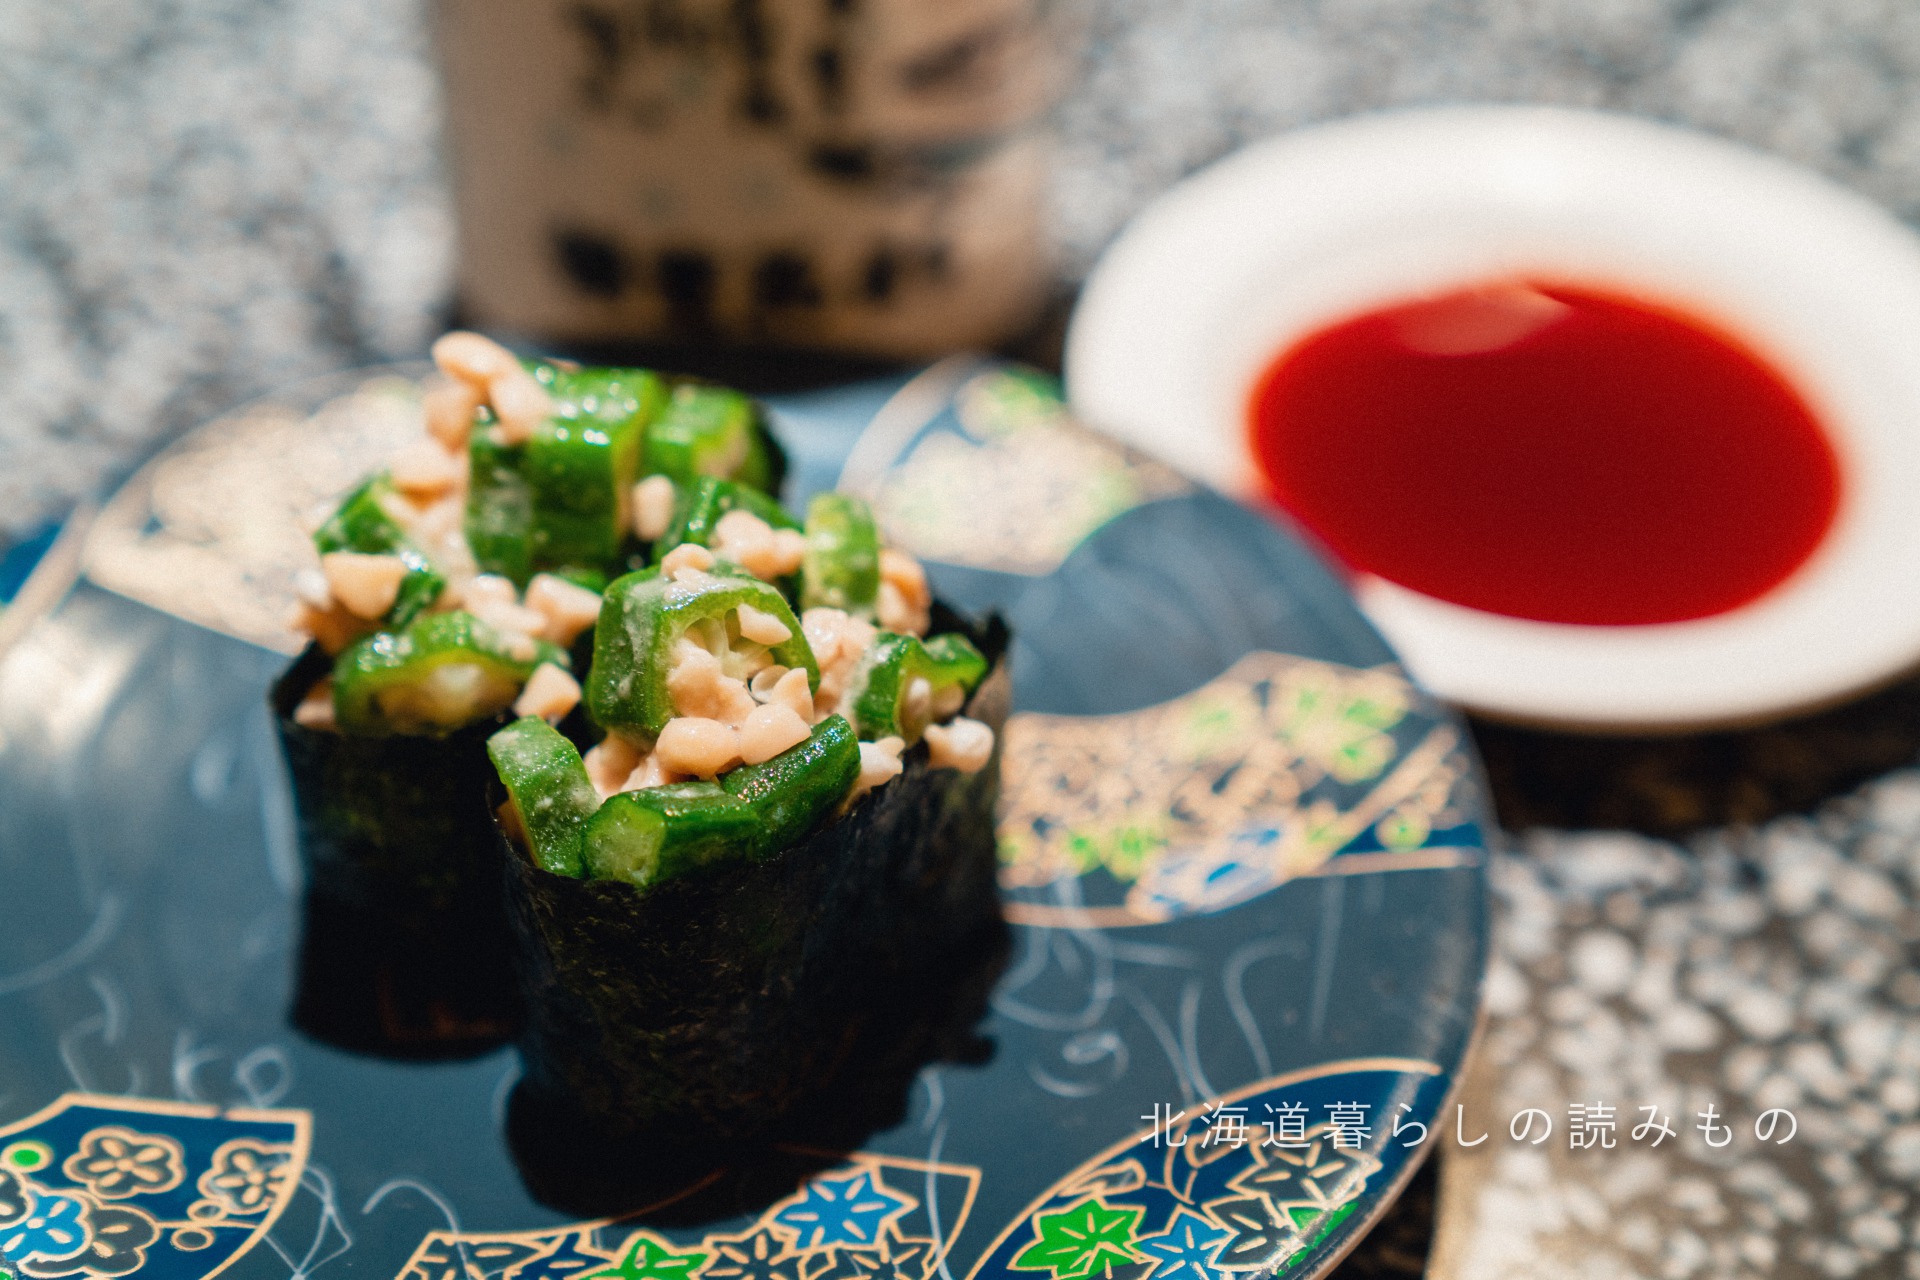 迴轉壽司根室花丸的菜單上的「秋葵納豆」